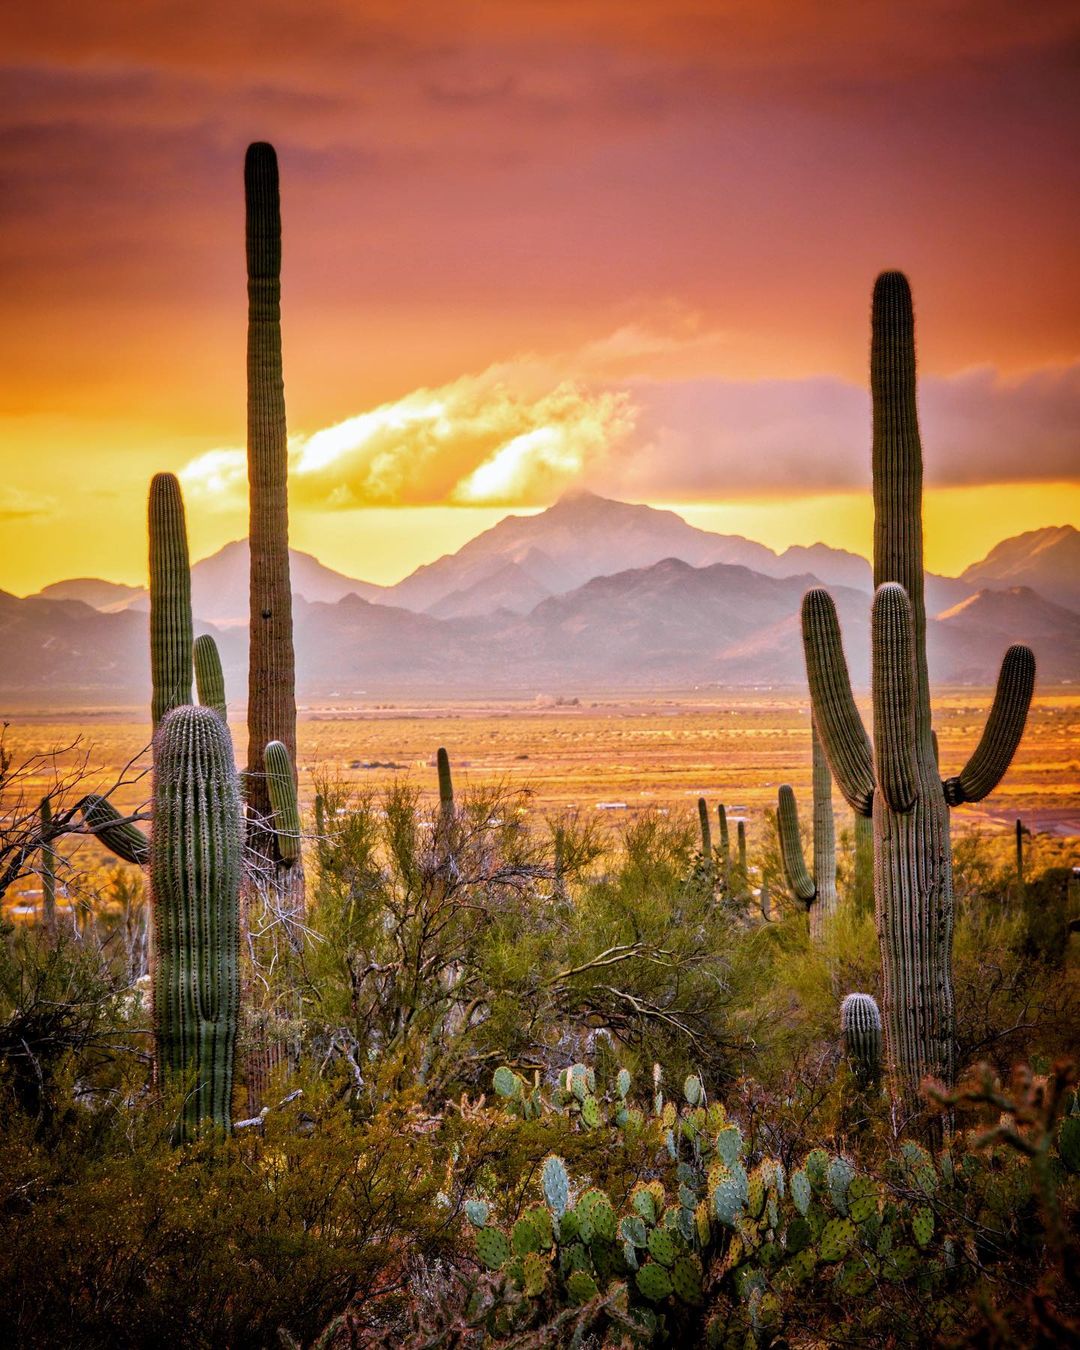 The Arizona Desert 